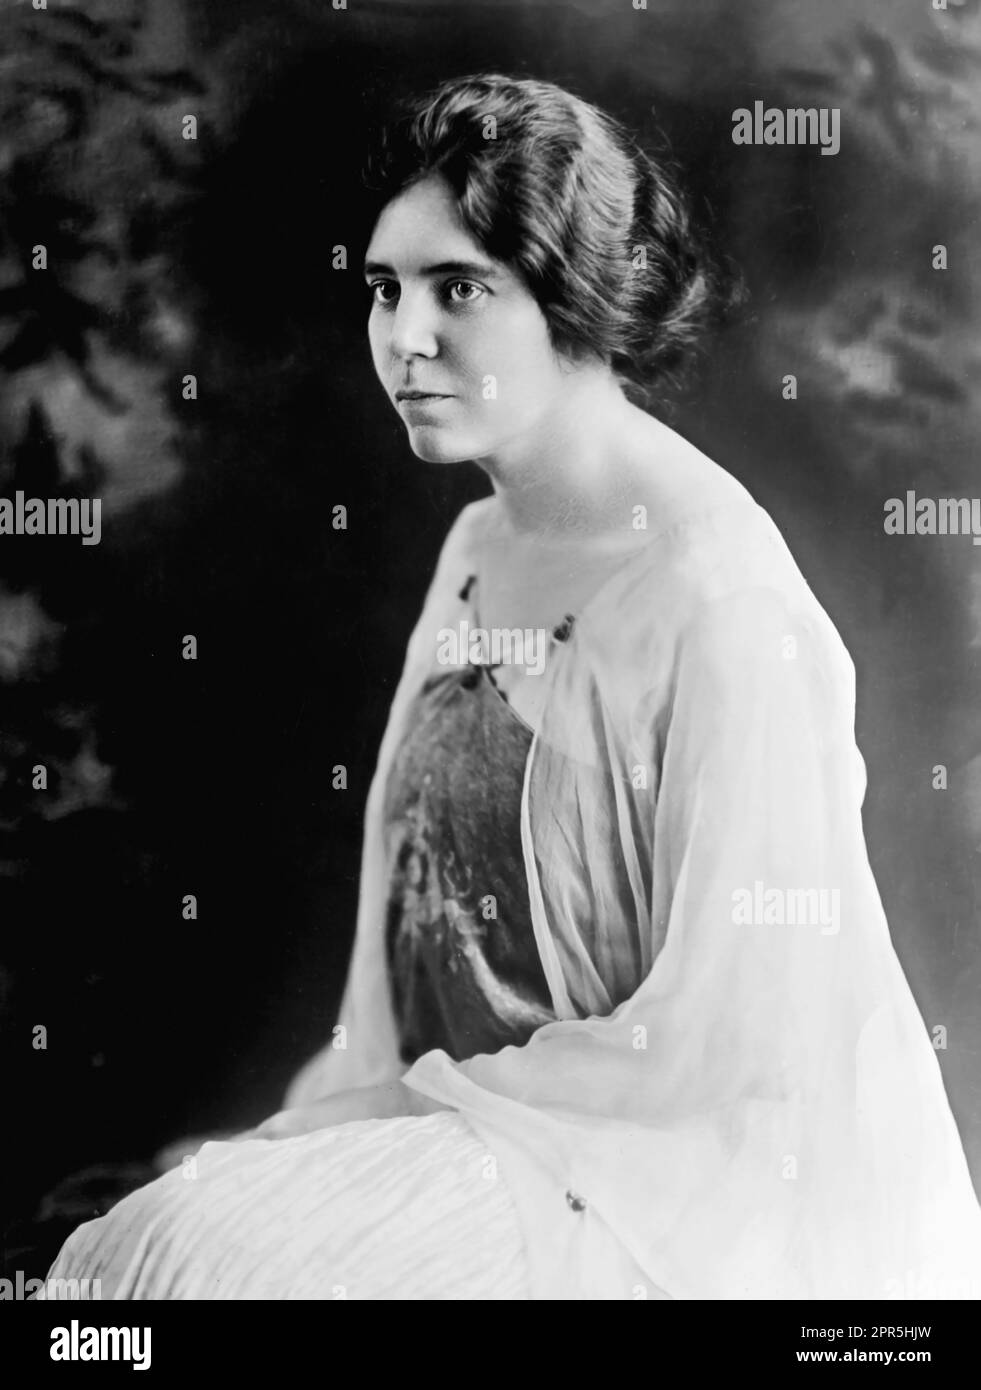 Alice Paul. Portrait de l'suffragiste américain Quaker et militante des droits des femmes, Alice Stokes Paul (1885-1977) par bain News Service, c. 1925 Banque D'Images